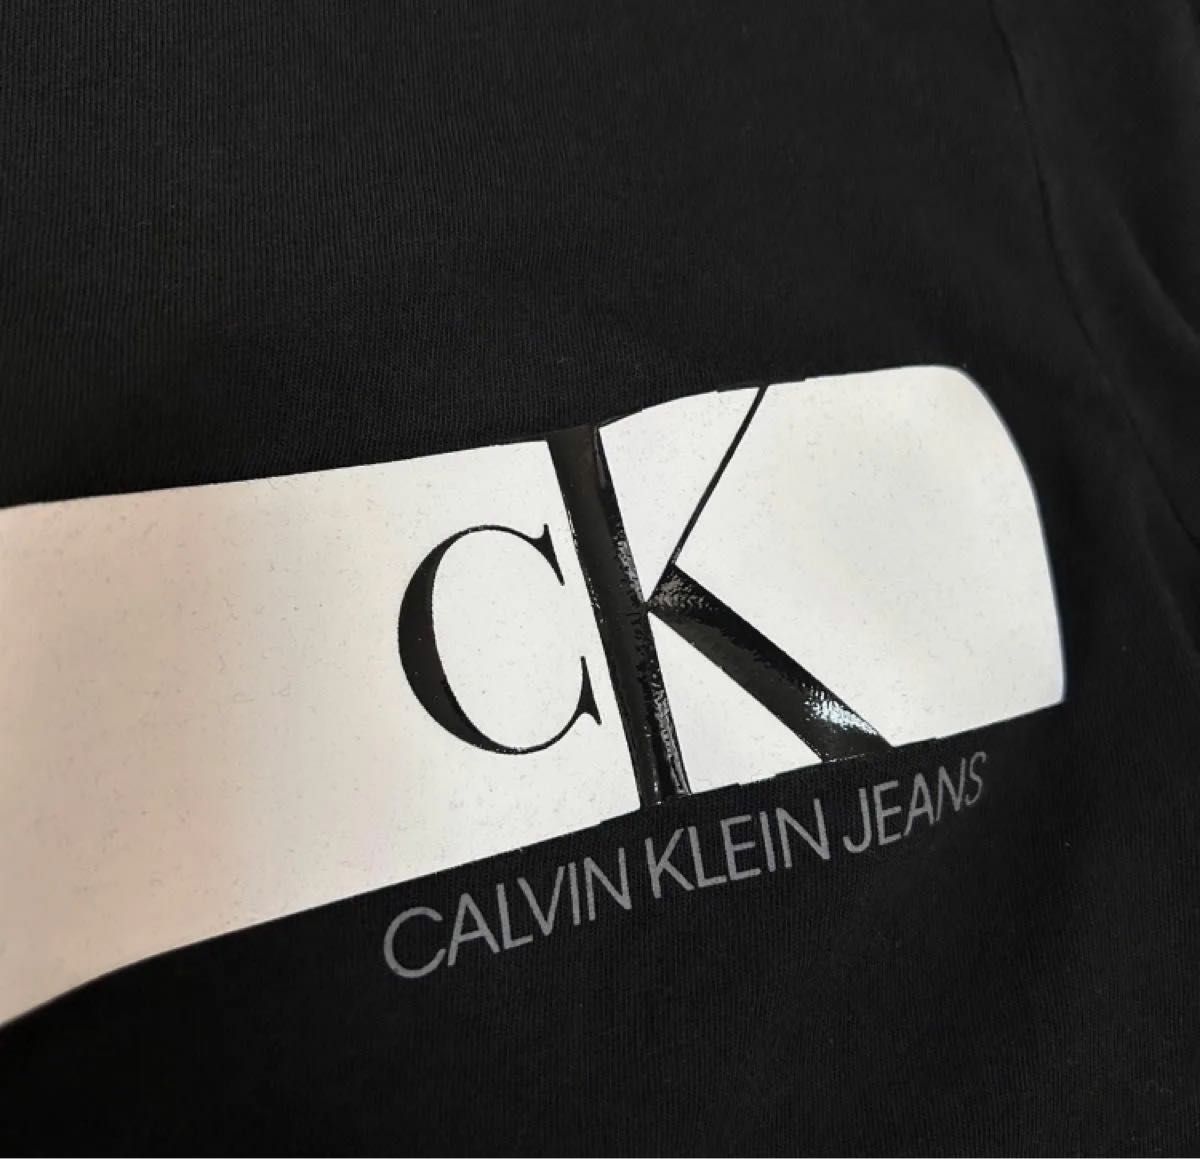 1点限り 最終値下げ 希少品 Calvin Klein フロントロゴ カットソー 半袖 CK カルバンクライン Sサイズ ブラック